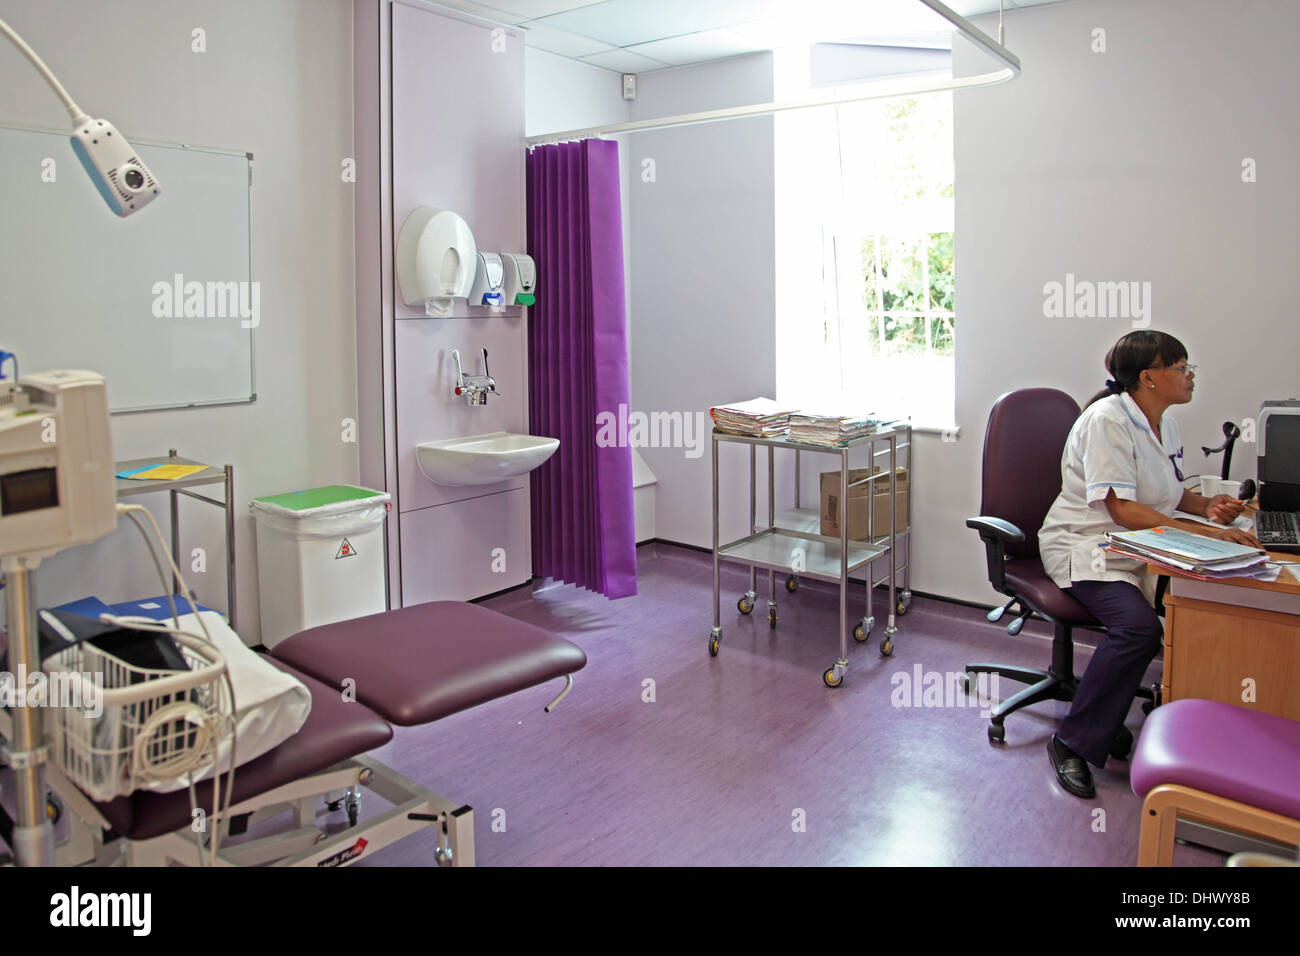 Una enfermera trabaja en un hospital recién reformado la sala de tratamiento. Londres, Reino Unido Foto de stock